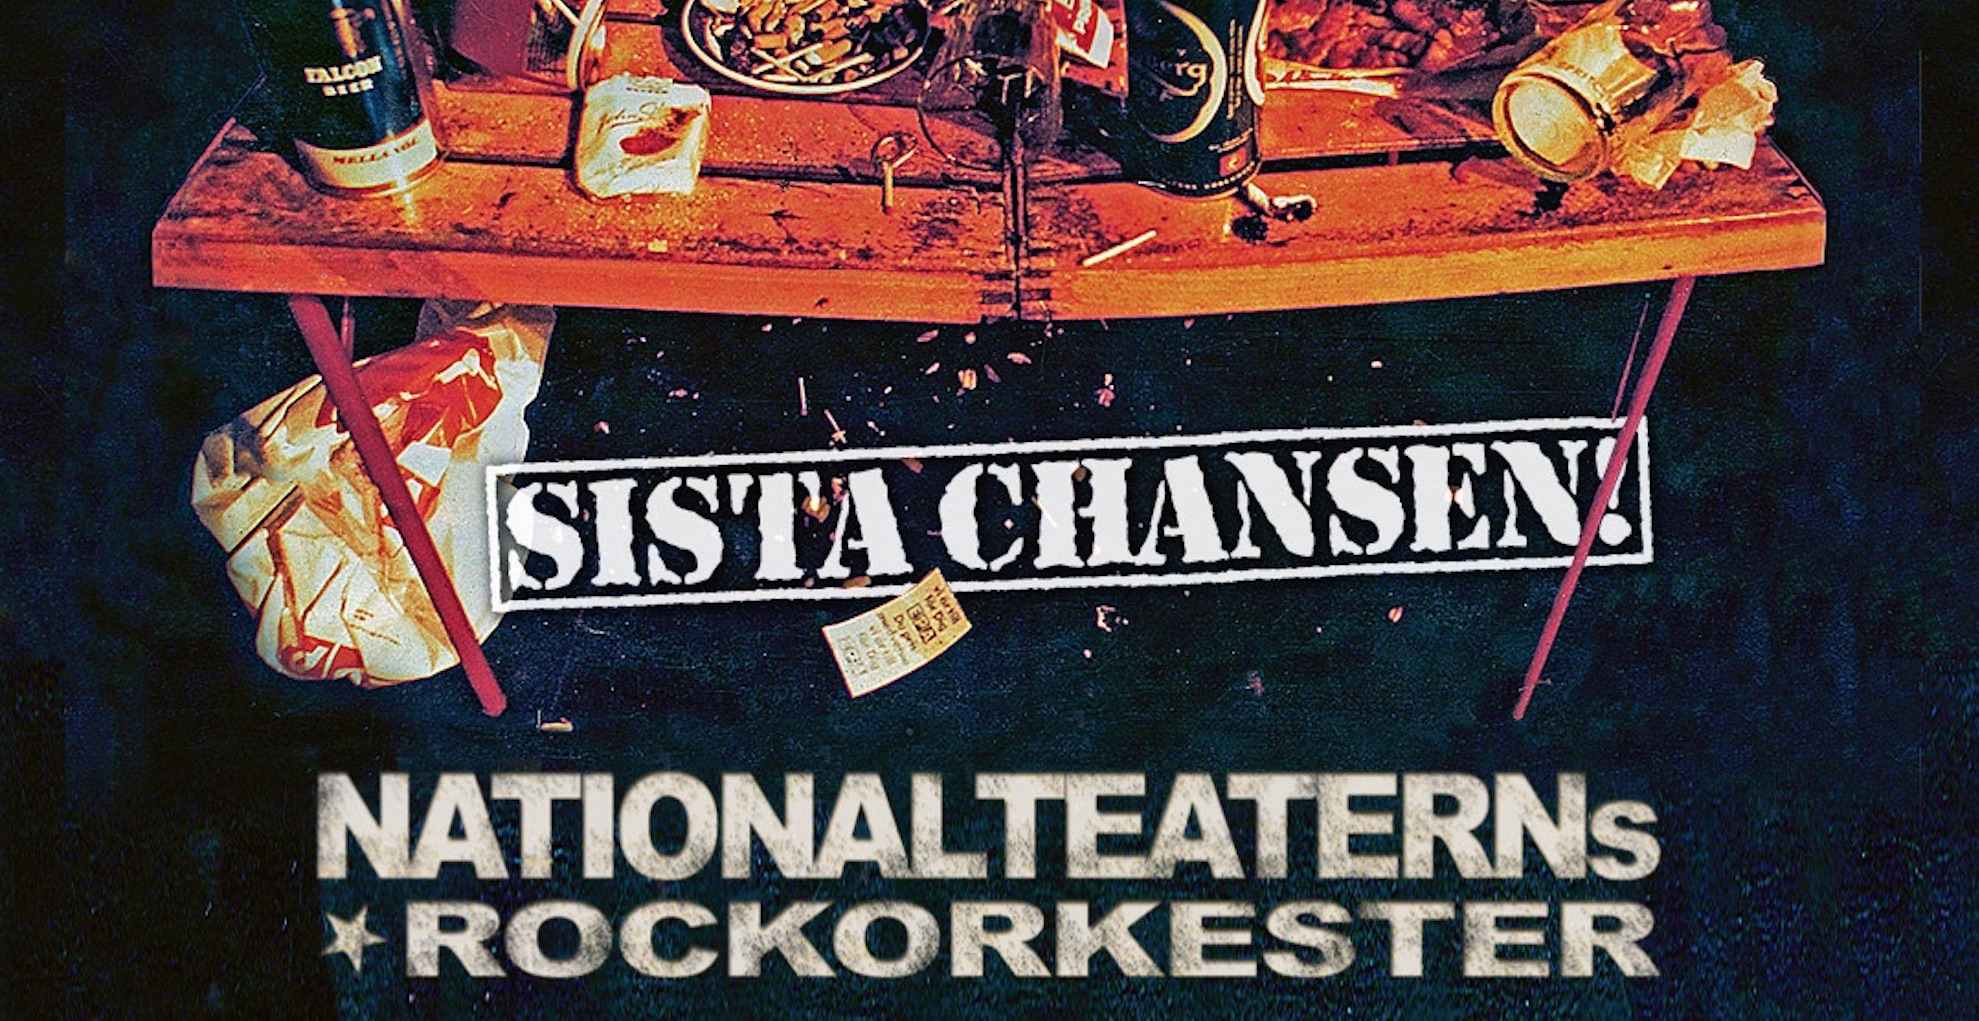 Stort intresse för Nationalteaterns Rockorkester ”Sista chansen" turné våren 2022 - extrakonserter har tillkommit!